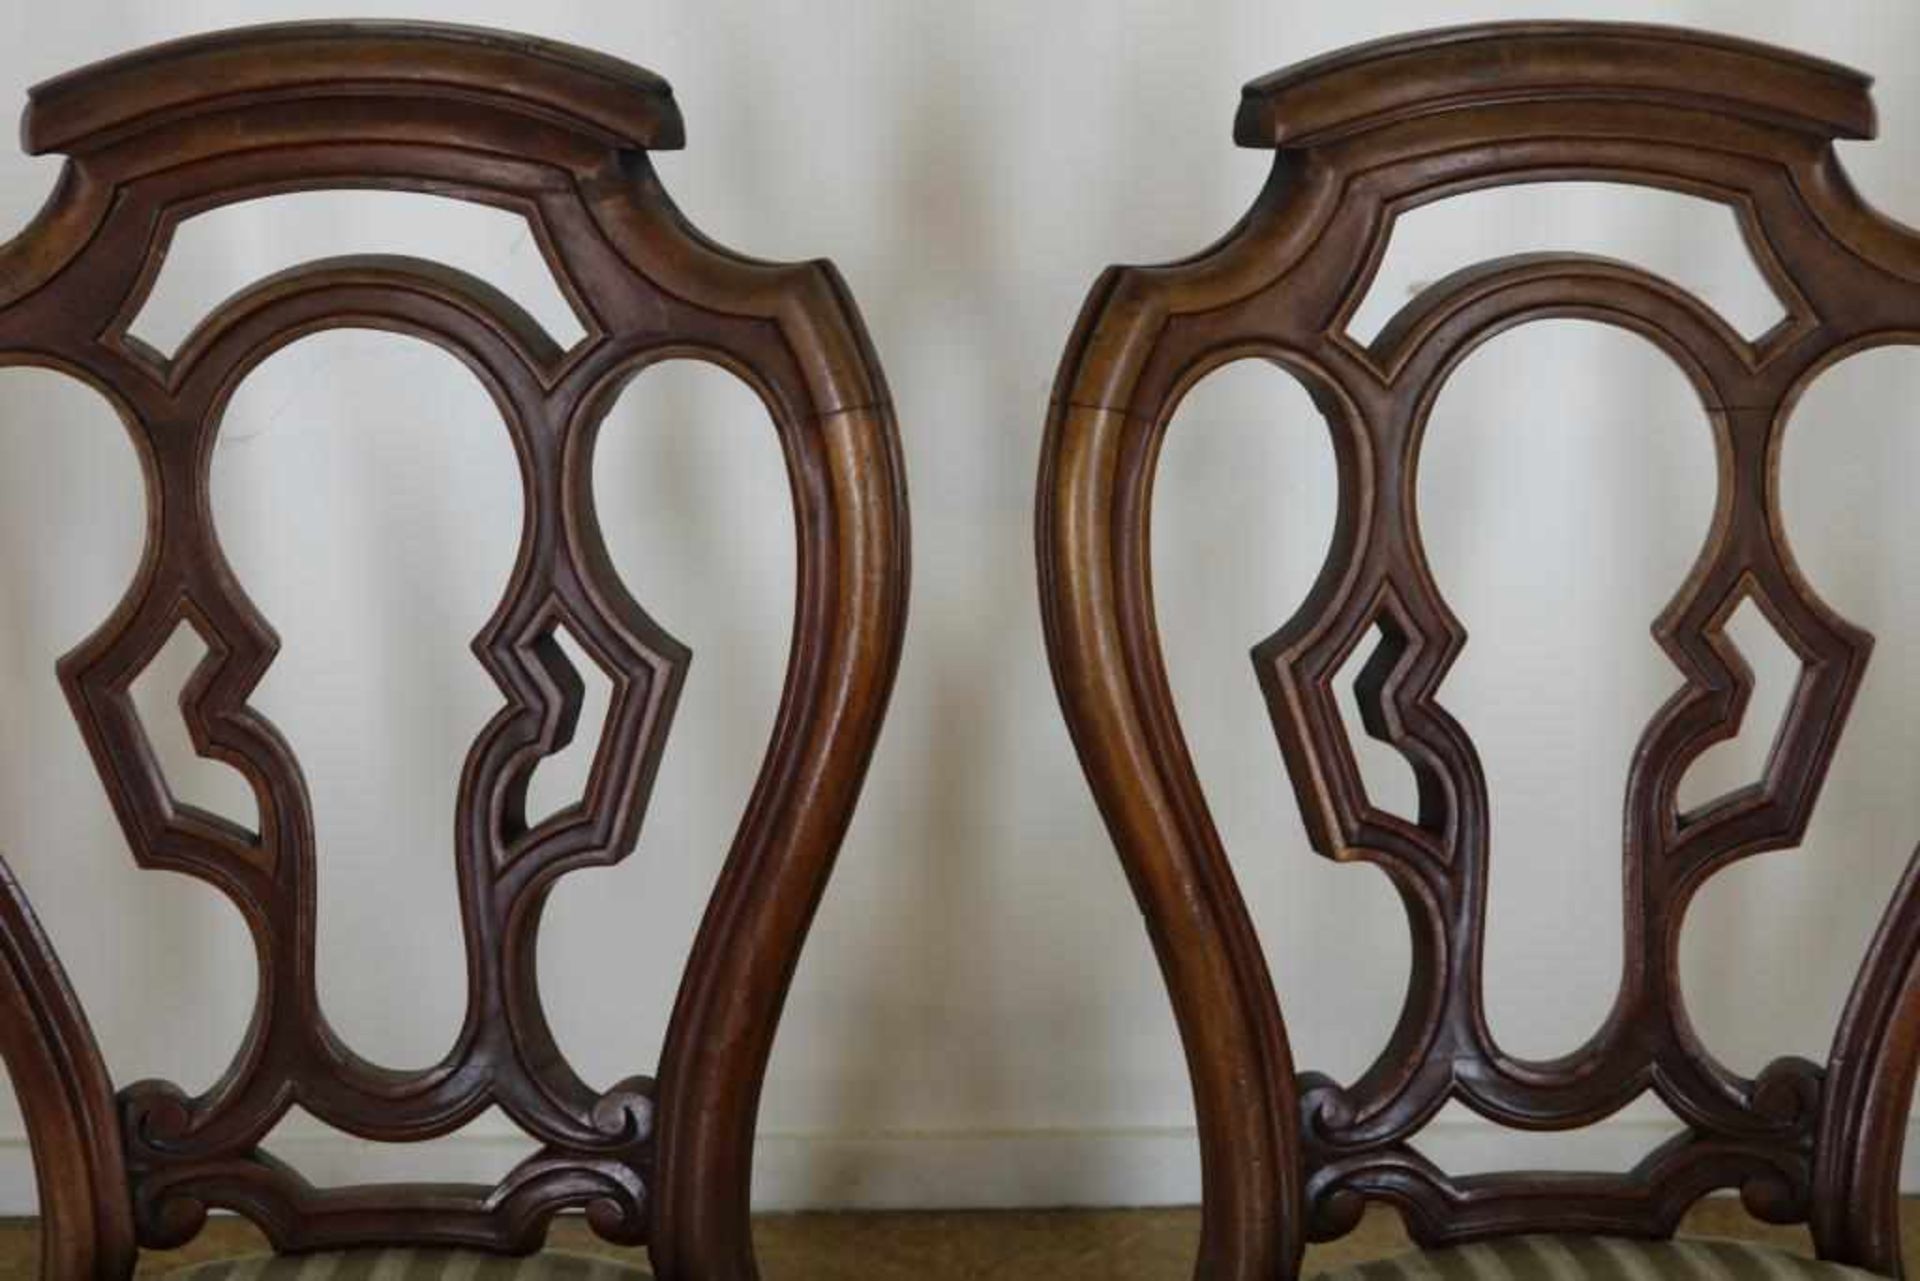 Serie van 4 mahonie stoelen met opengewerkte leuning en groen velourse zitting, 19e eeuw. - Bild 3 aus 3